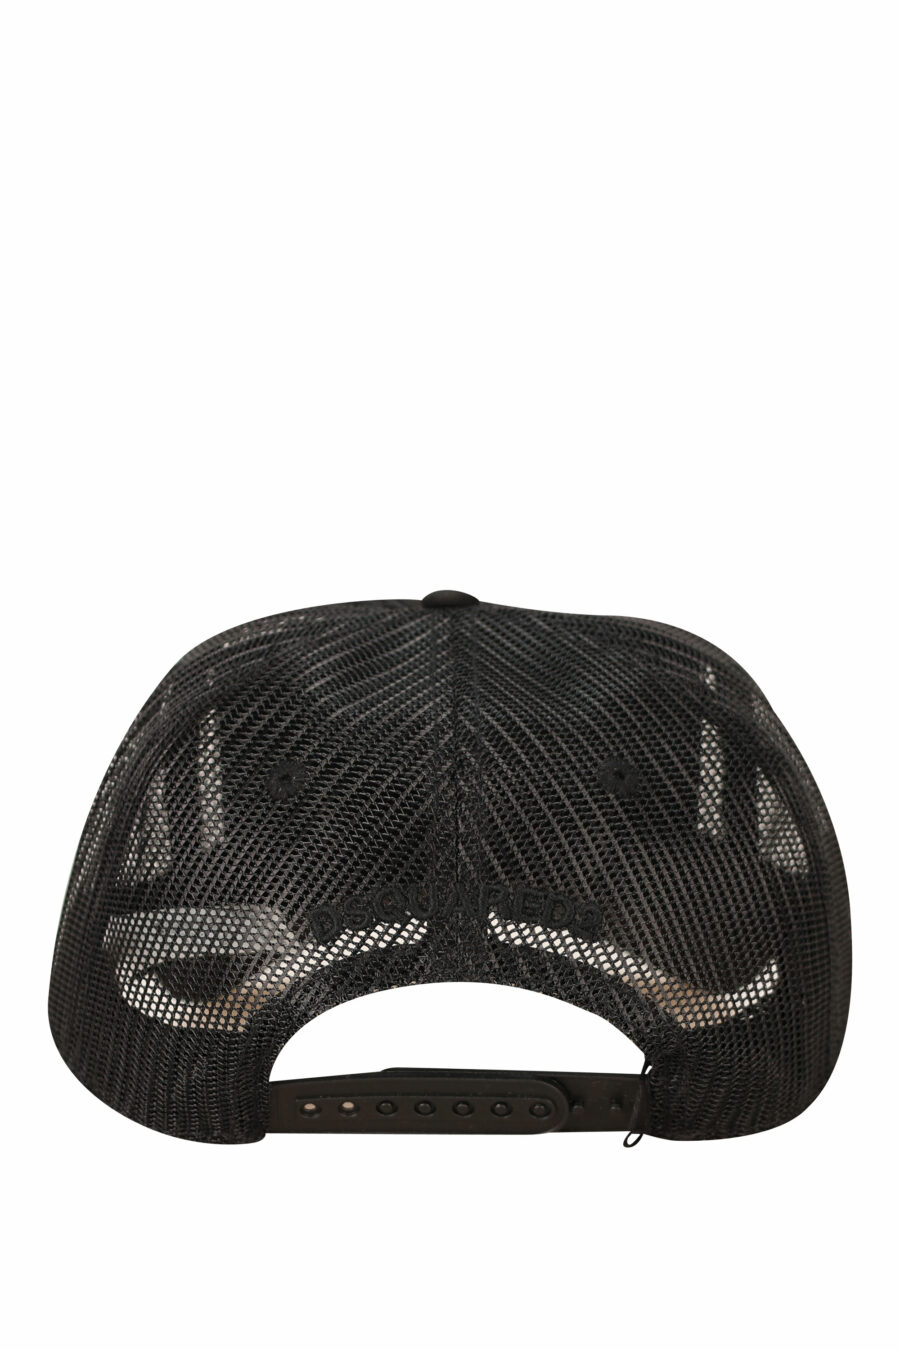 Gorra negra de rejilla con logo monocromático - 8055777290347 1